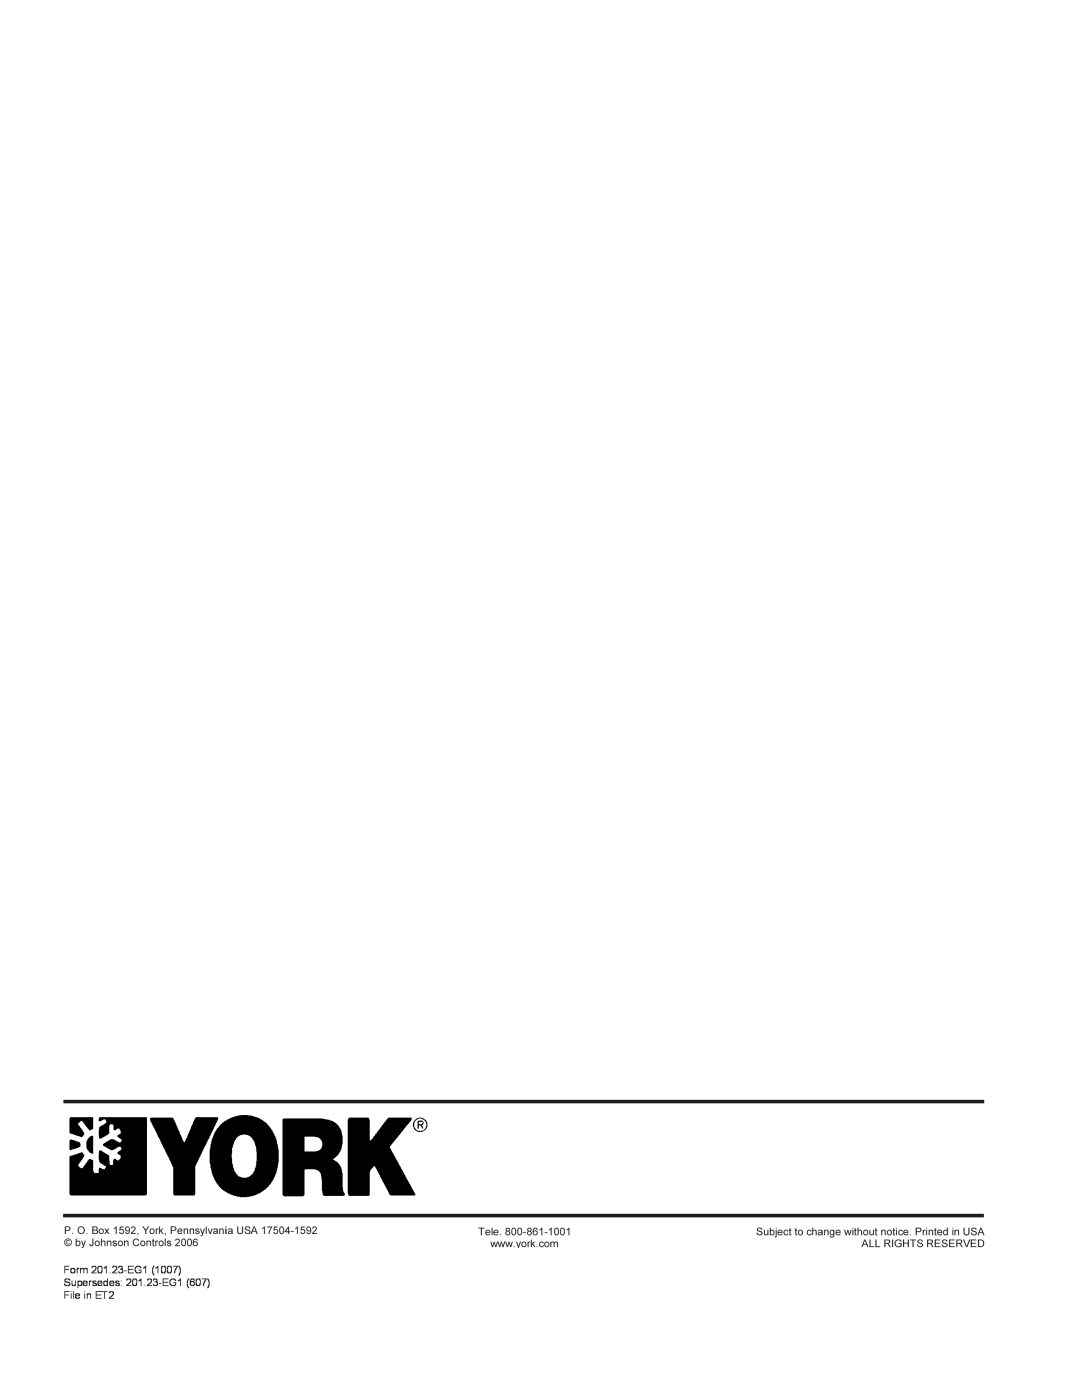 York R134A manual Form 201.23-EG11007 Supersedes: 201.23-EG1607, File in ET2 